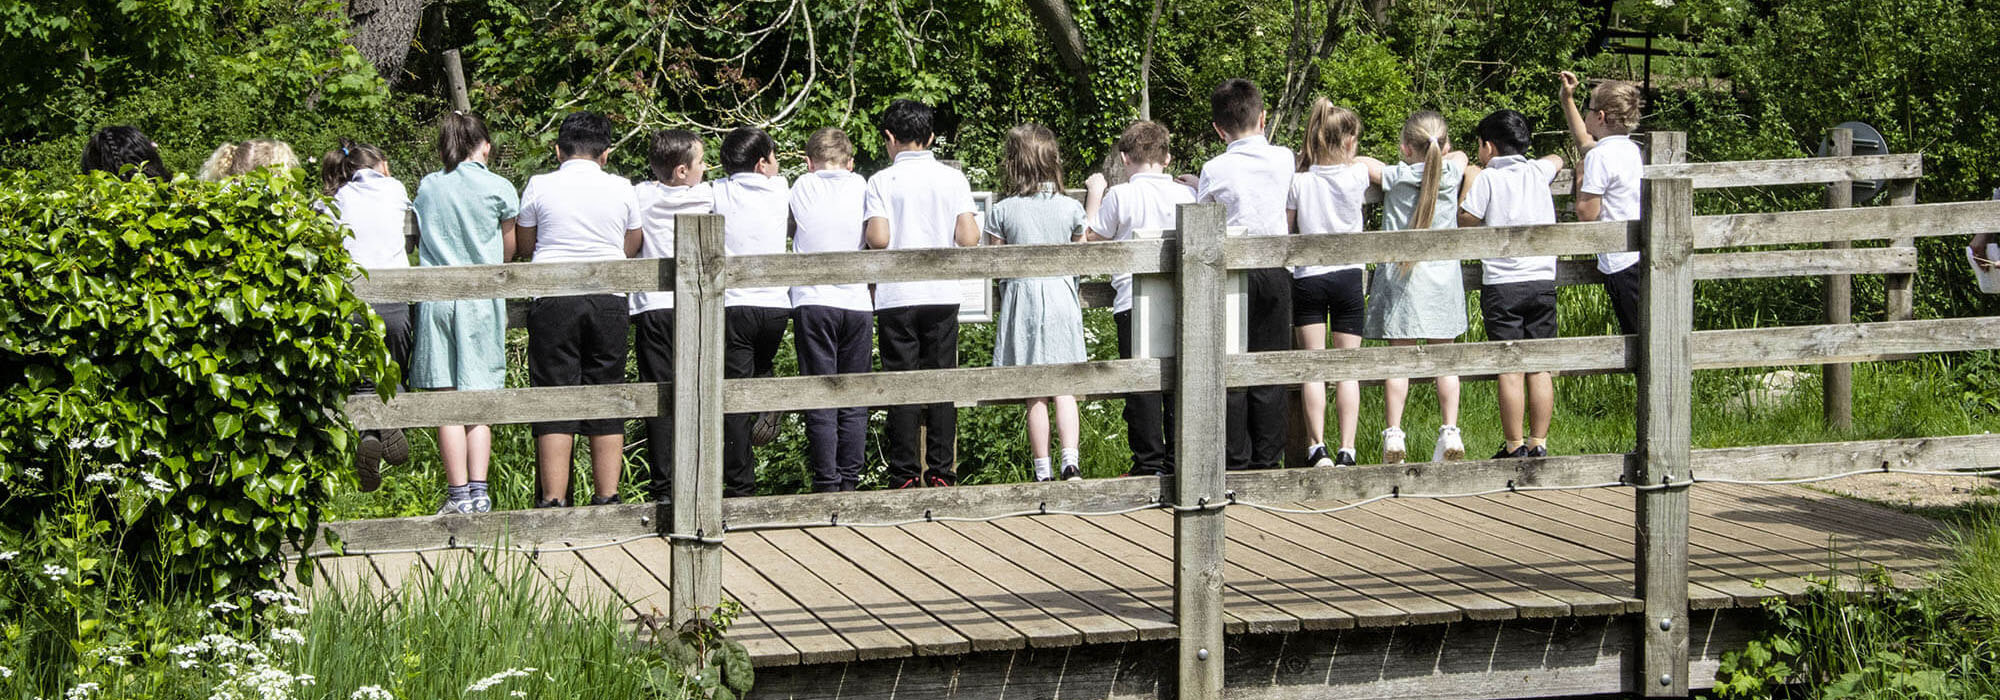 school pupils on pooh sticks bridge at sacrewell.